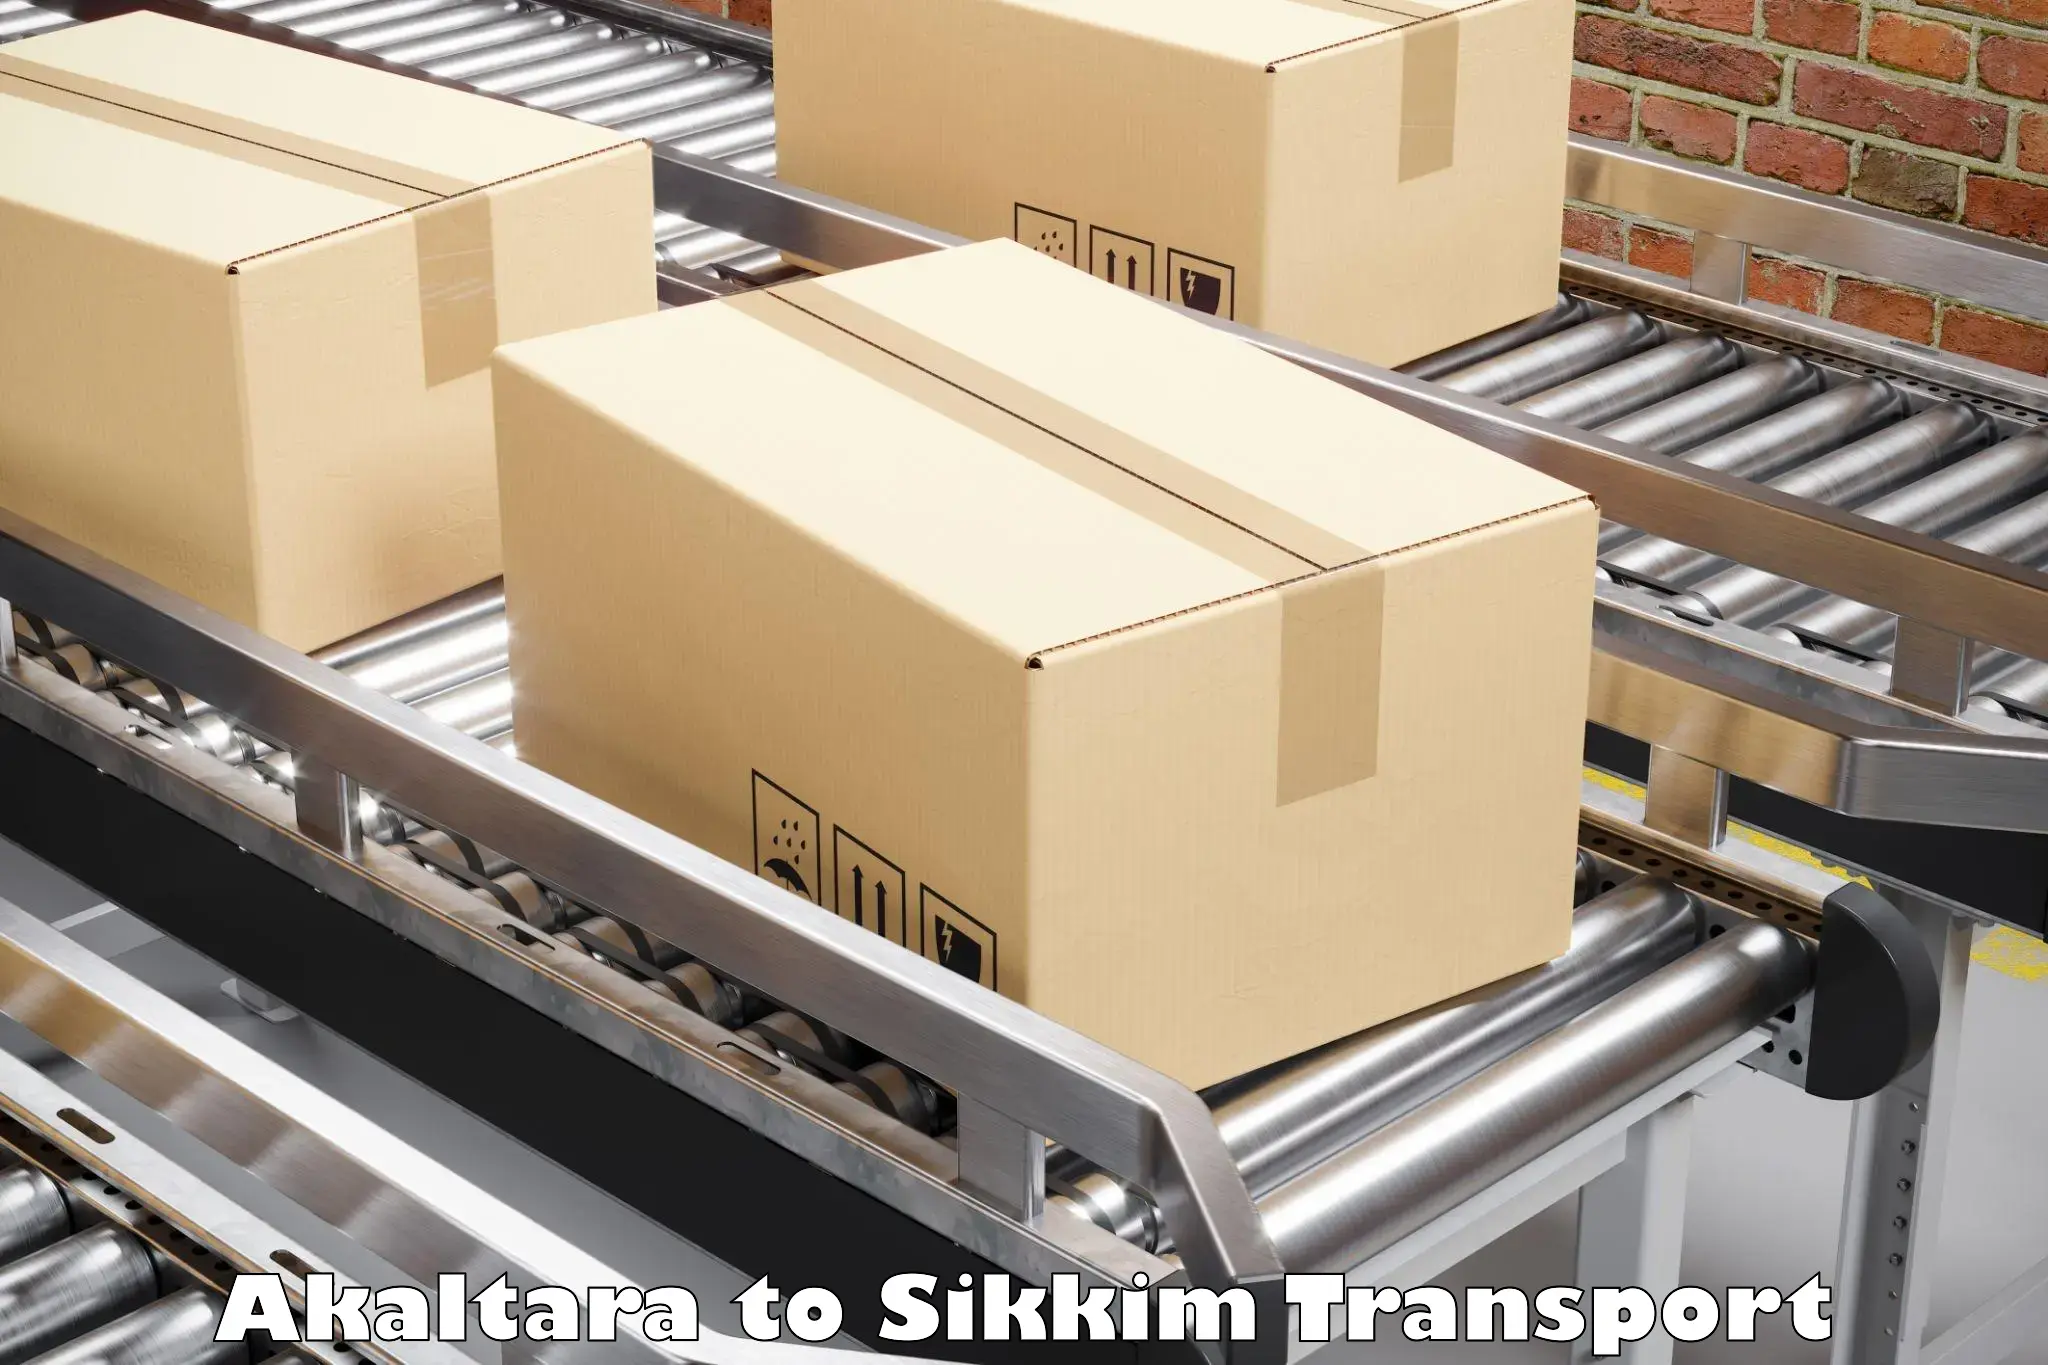 Shipping partner Akaltara to East Sikkim